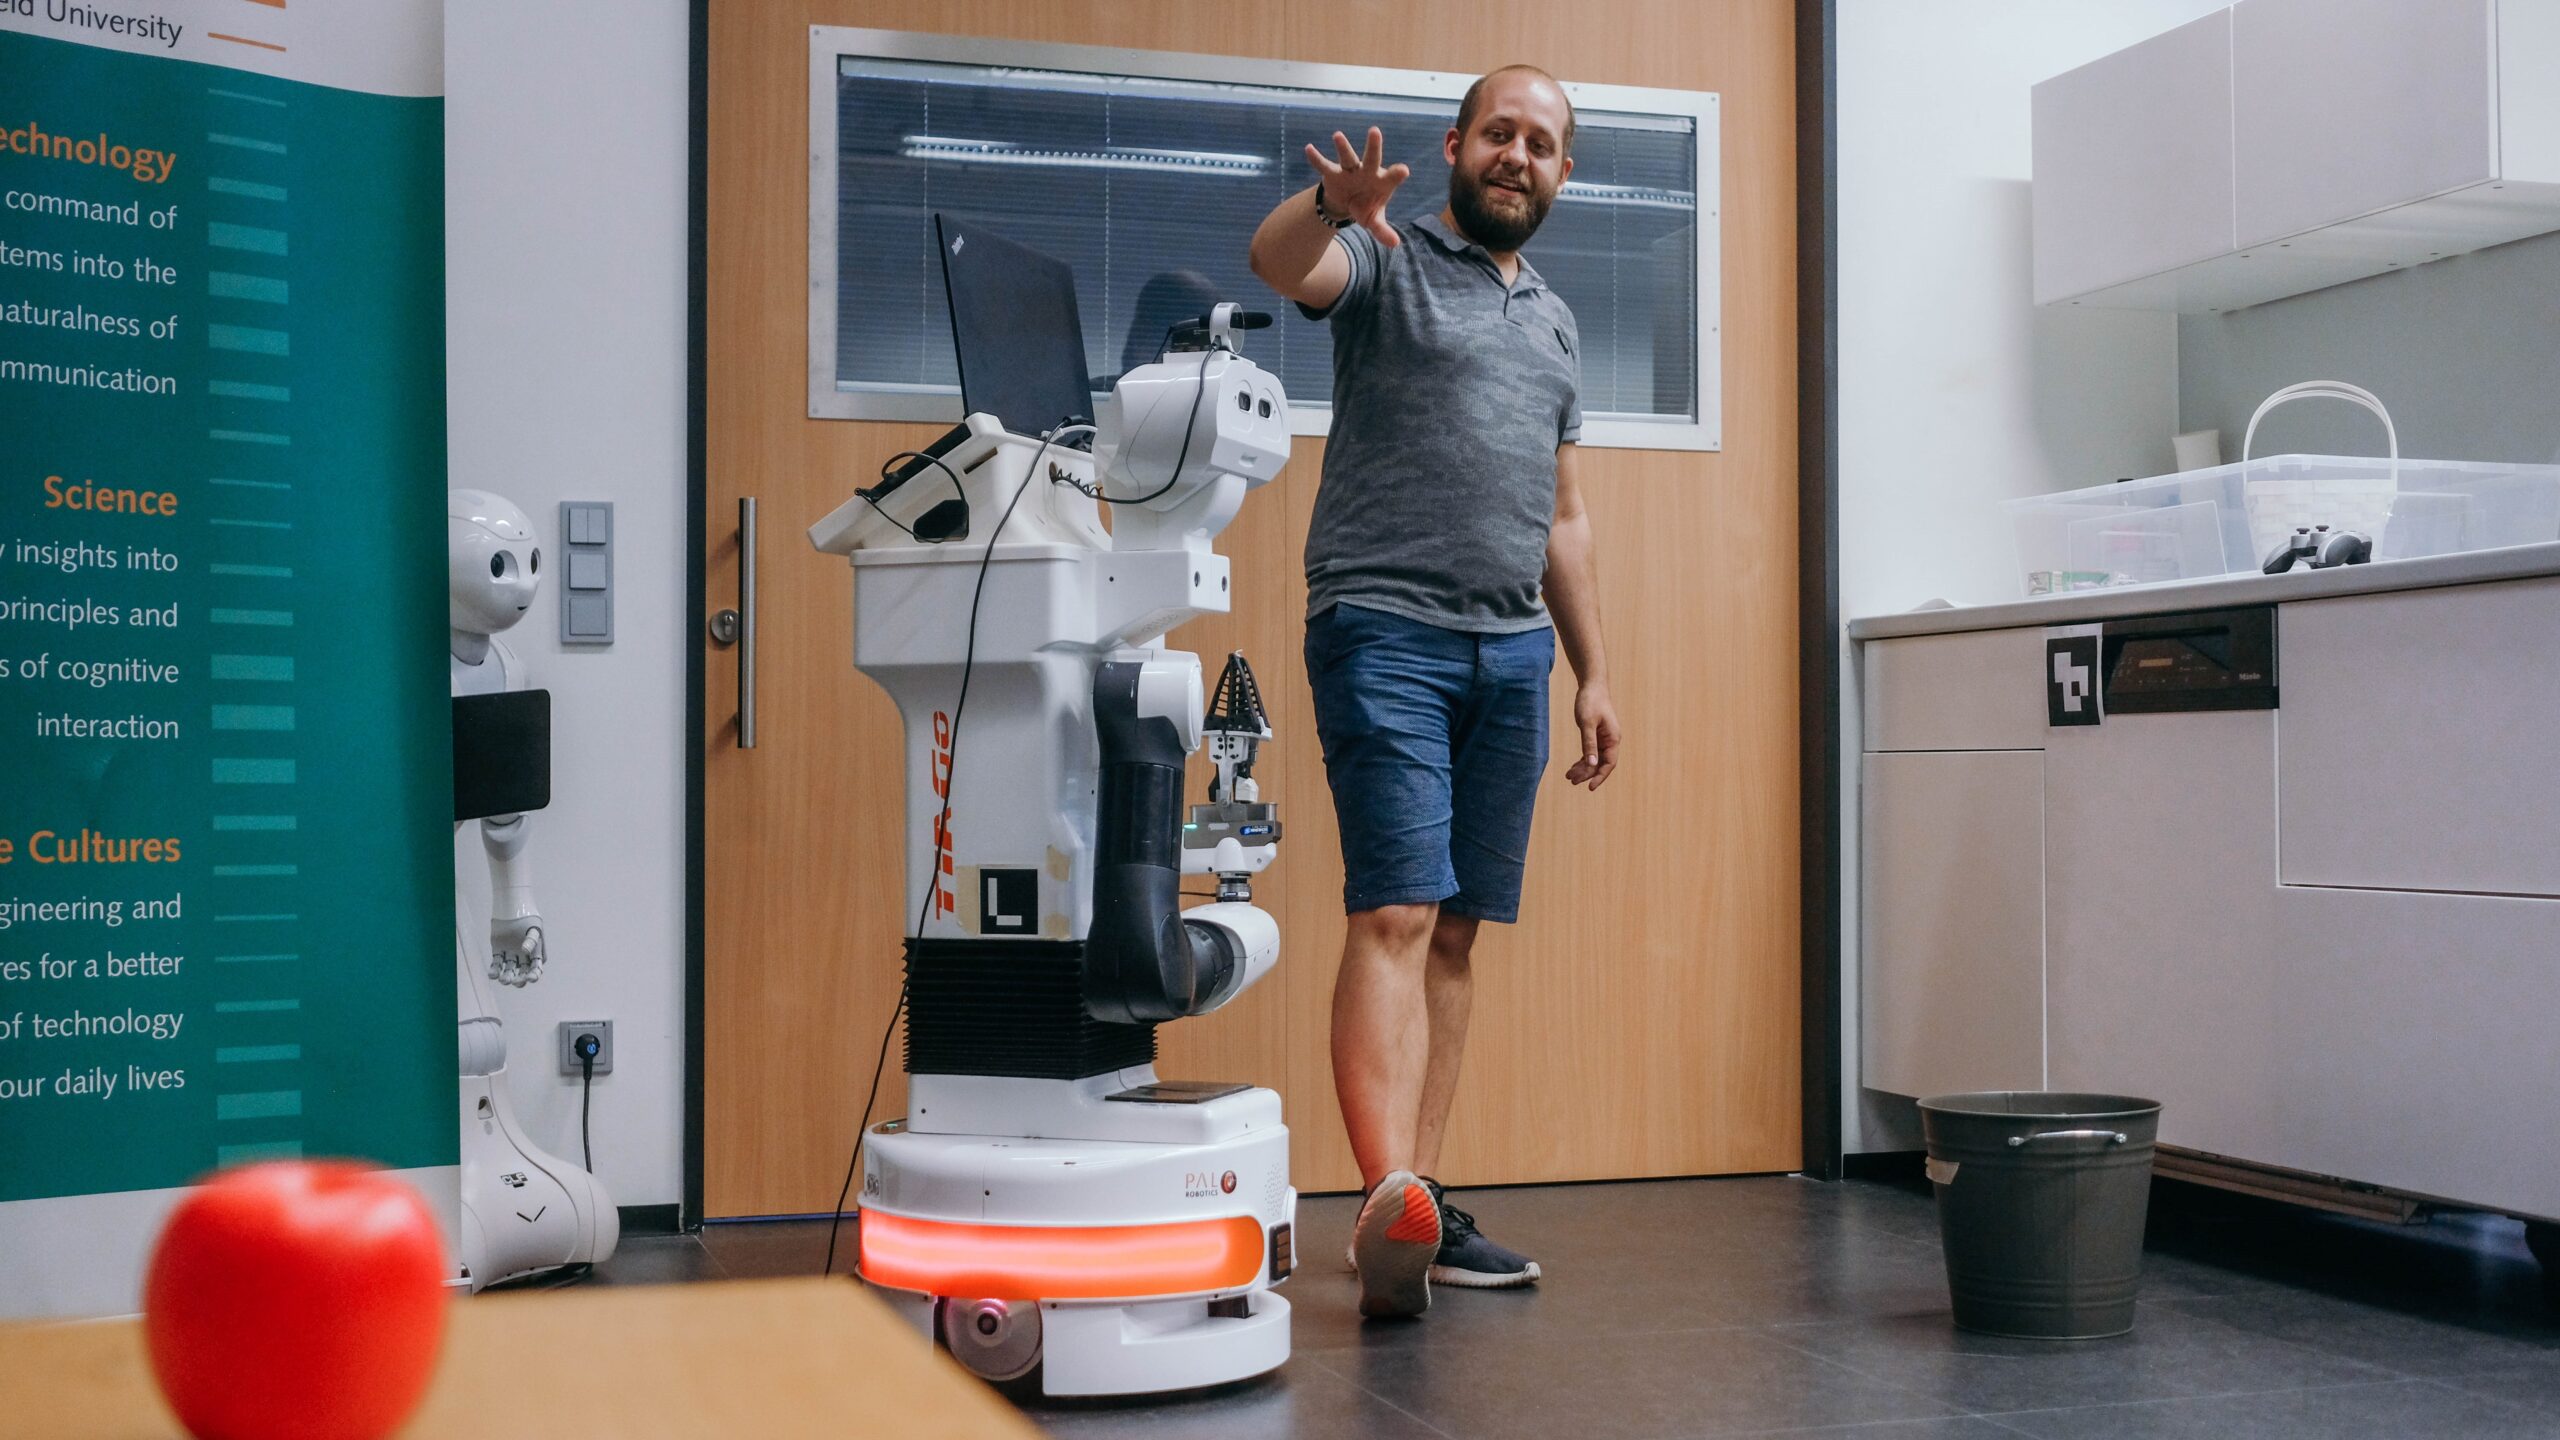 Ein Mann steht neben dem Serviceroboter im Labor